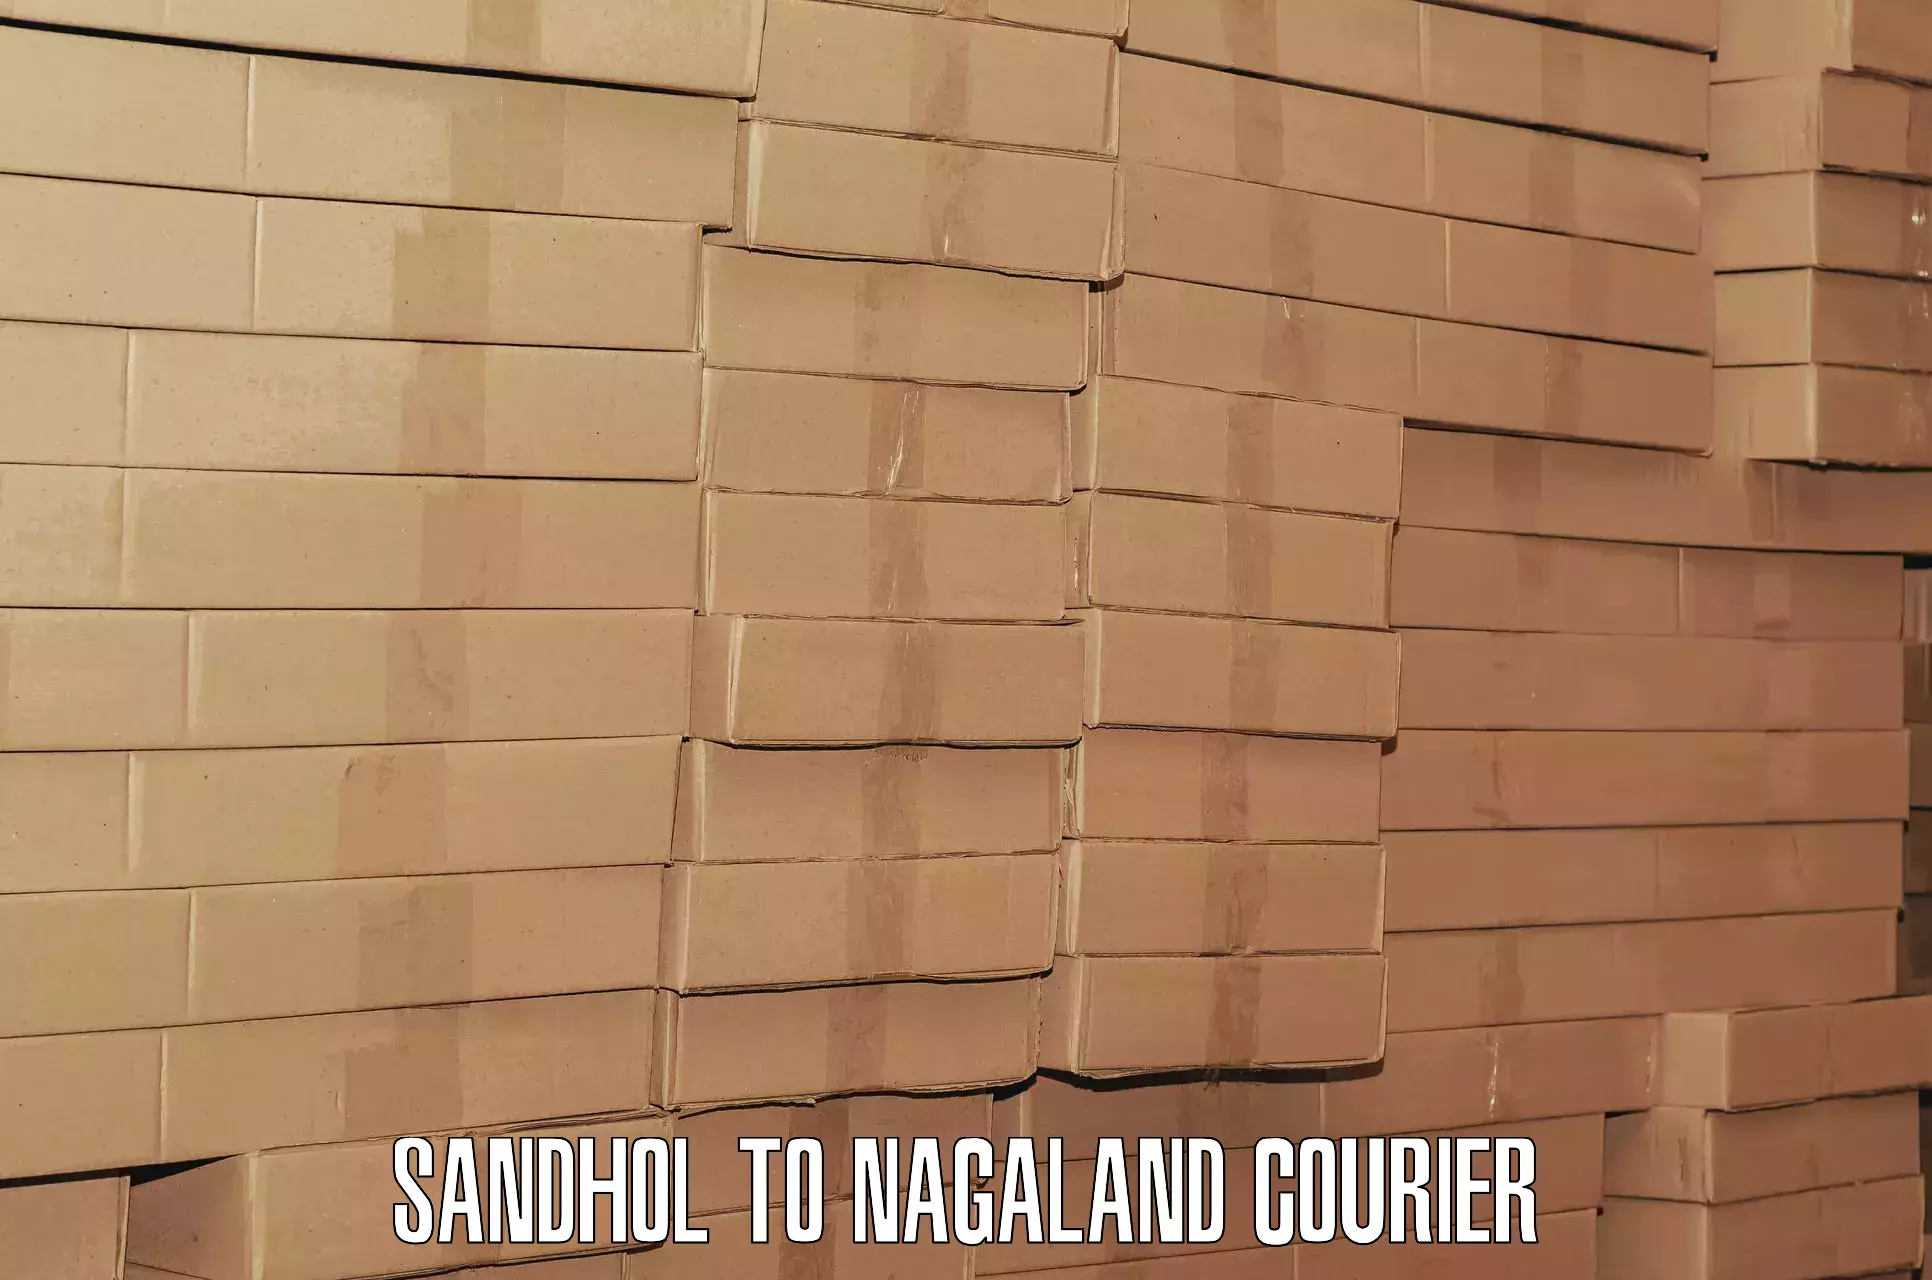 Luggage transit service Sandhol to Nagaland